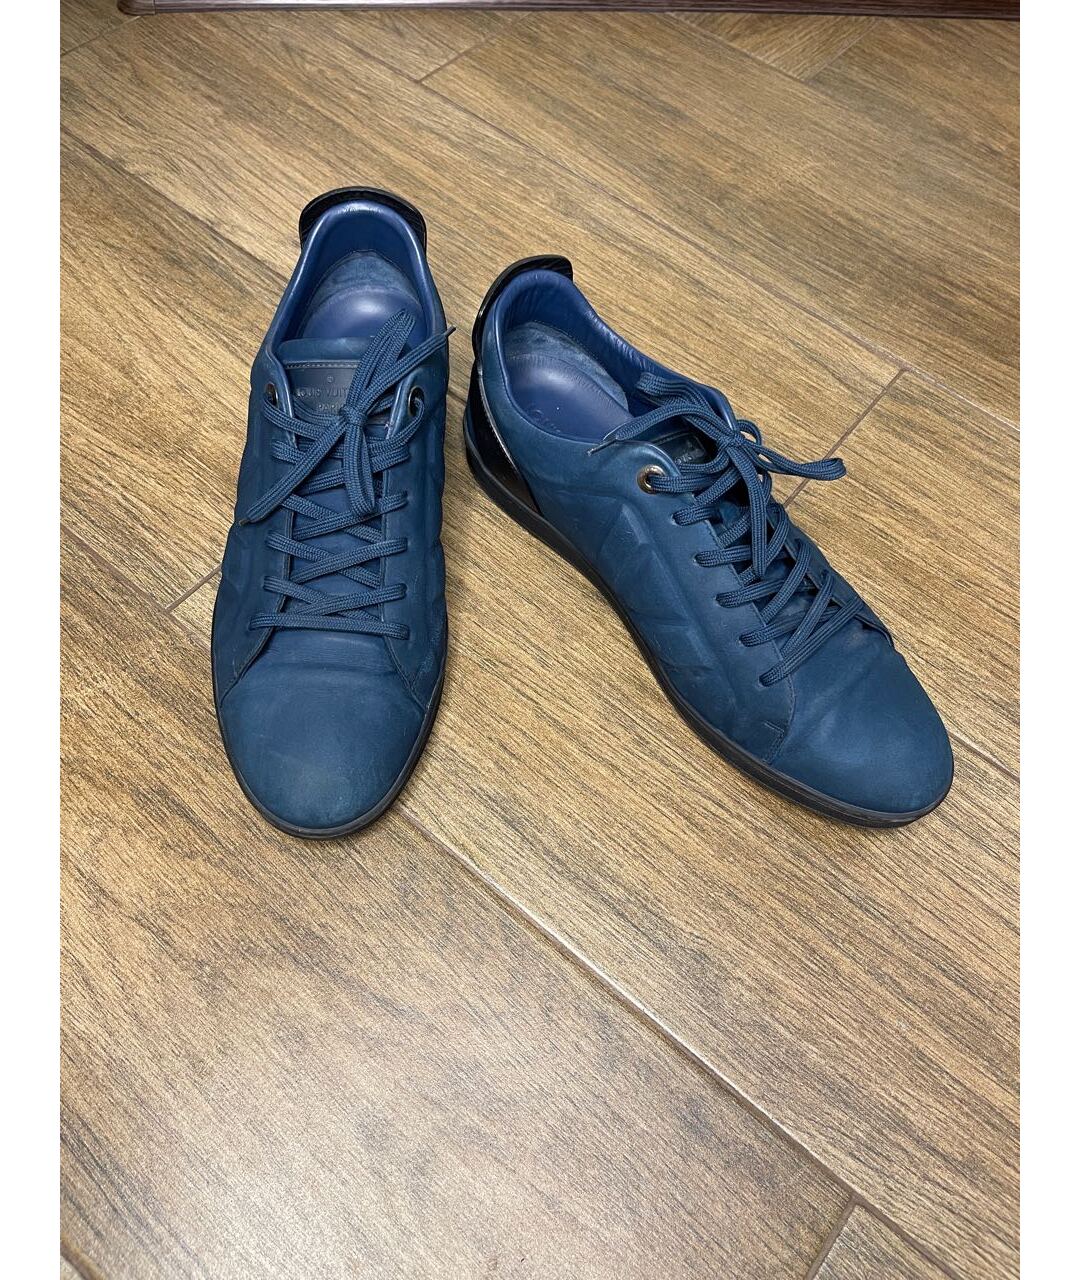 LOUIS VUITTON PRE-OWNED Темно-синие кожаные низкие кроссовки / кеды, фото 2